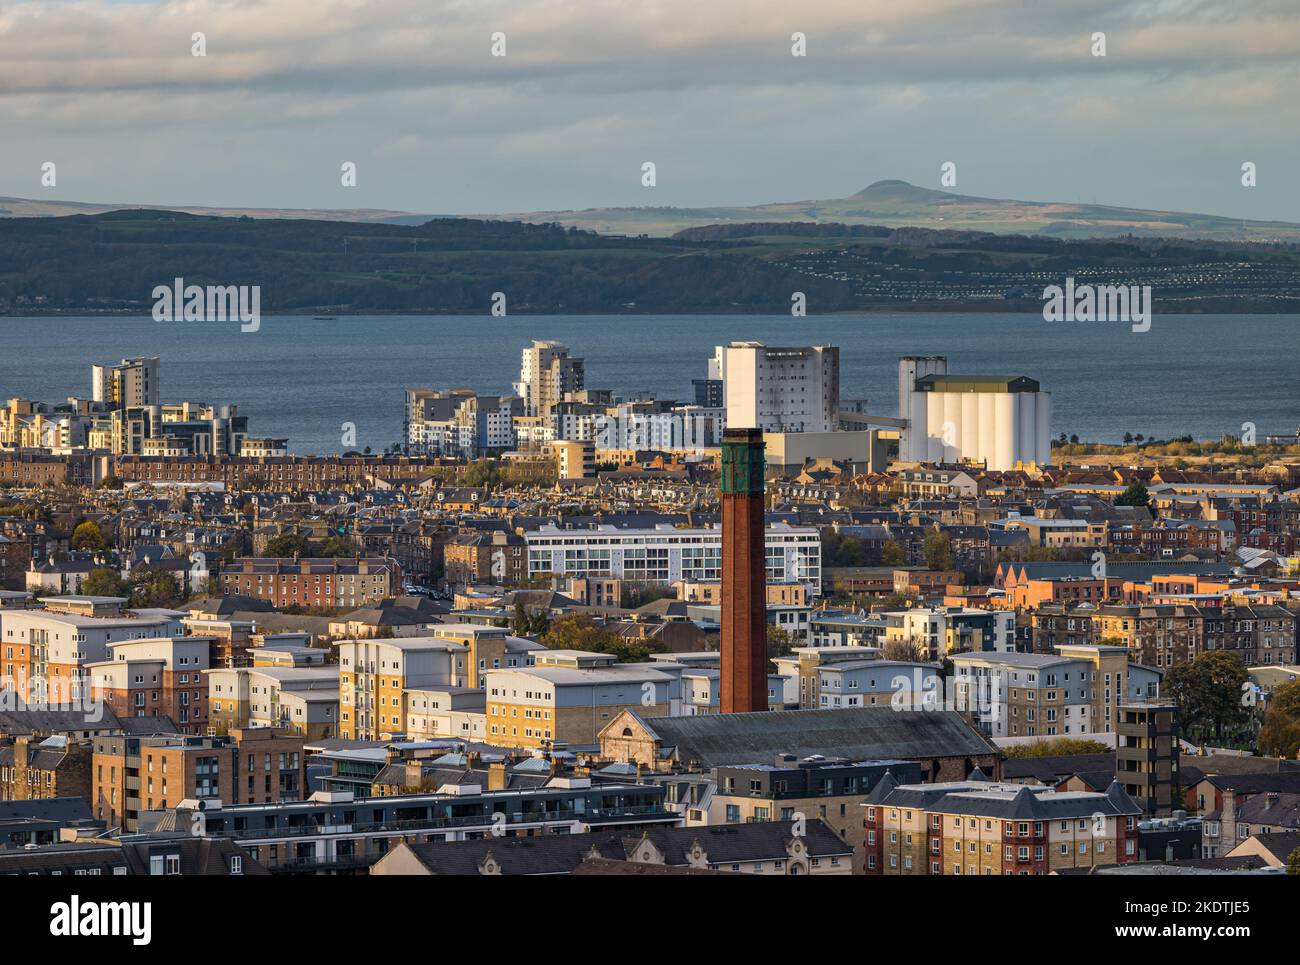 Blick über die Dächer auf den Firth of Forth mit einem industriellen Schornsteinturm und Hochhäusern. Edinburgh, Schottland, Großbritannien Stockfoto